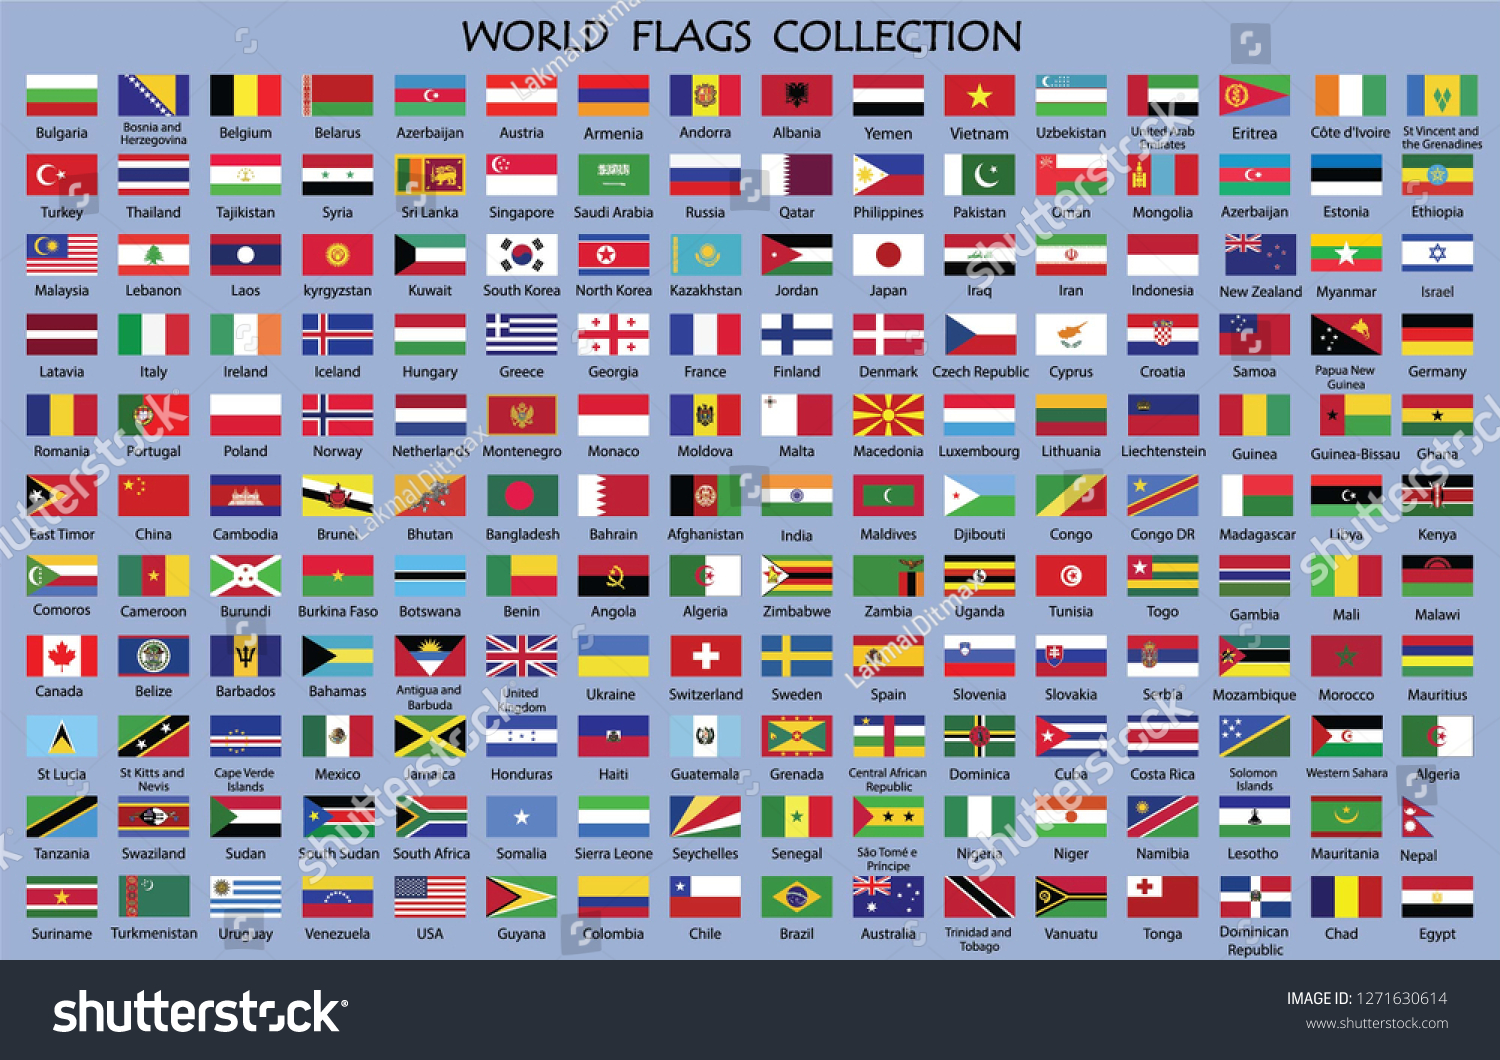 Флаги всех стран мира с названиями на русском